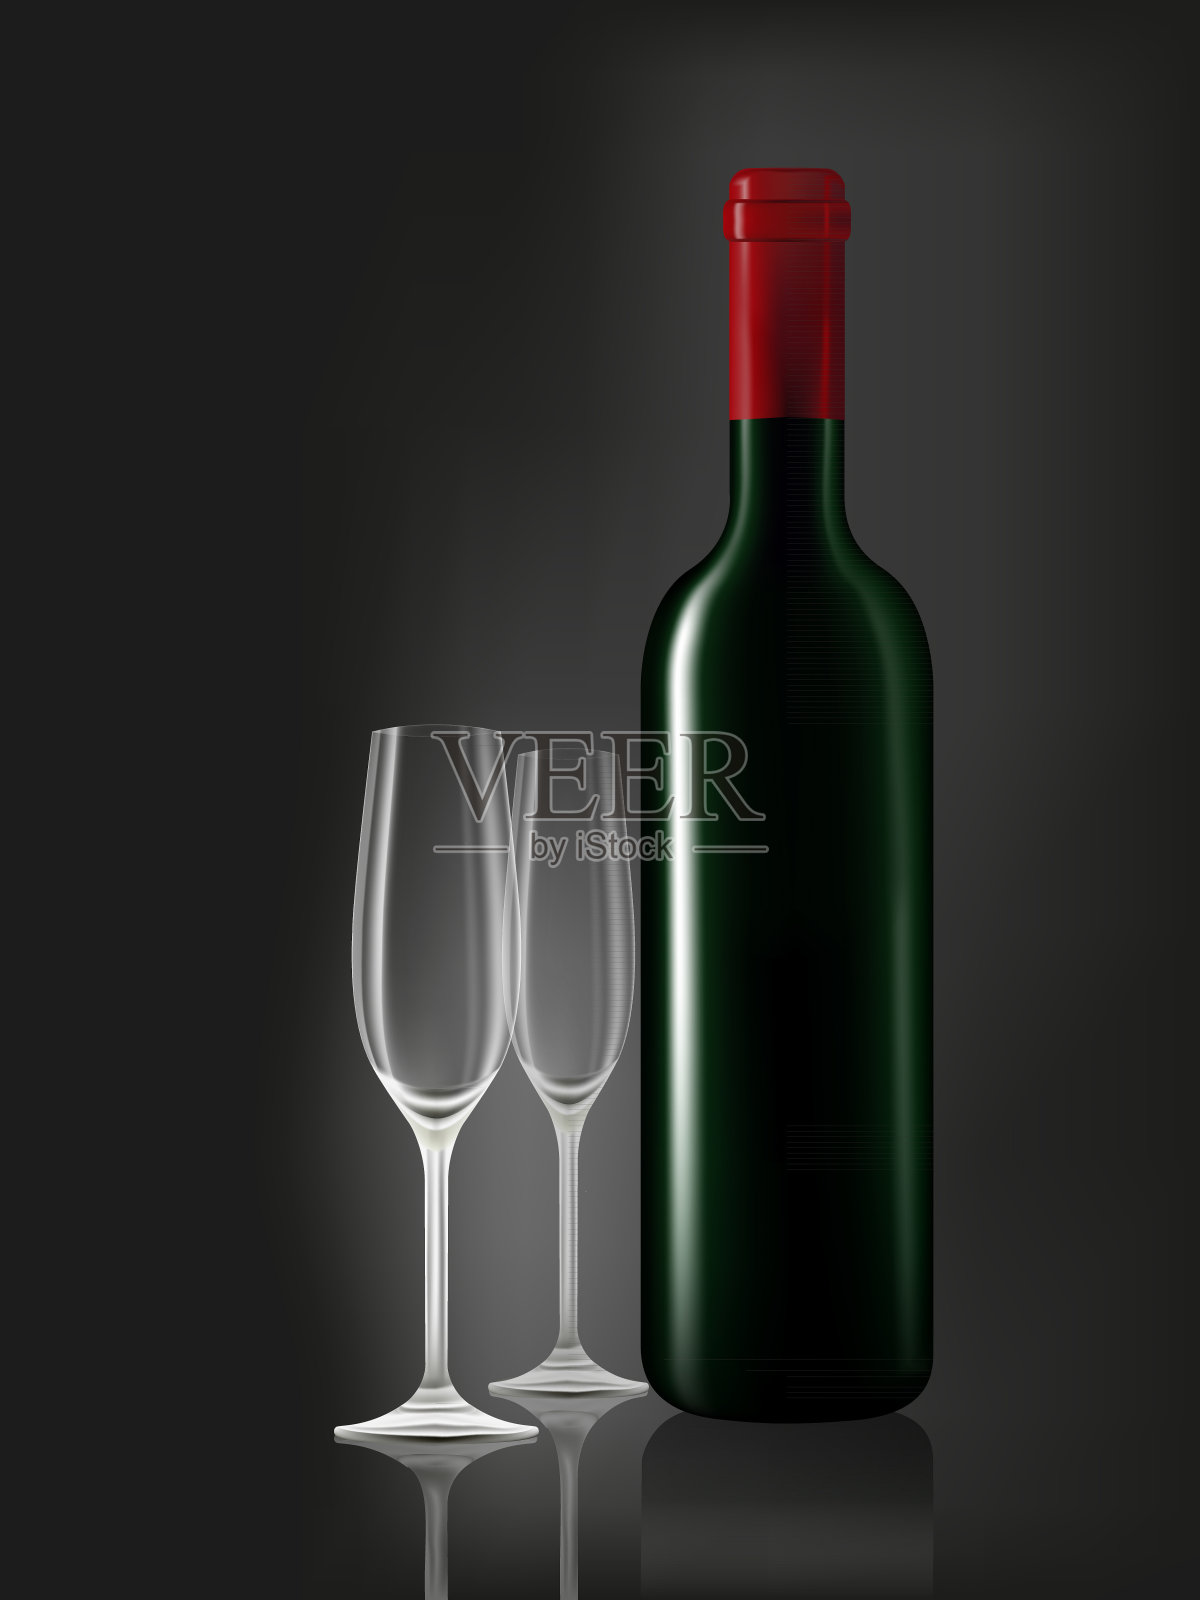 酒瓶和两个黑杯设计元素图片